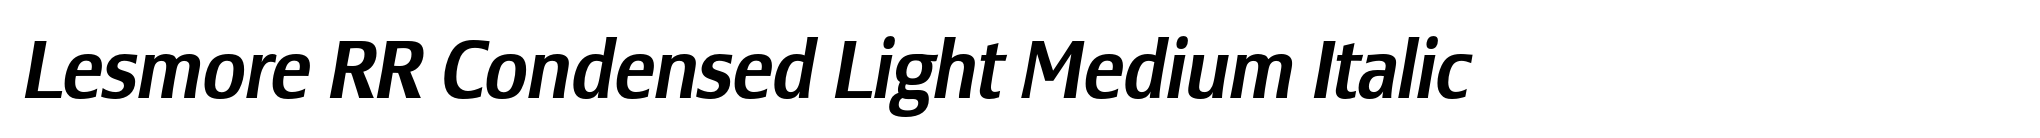 Lesmore RR Condensed Light Medium Italic image